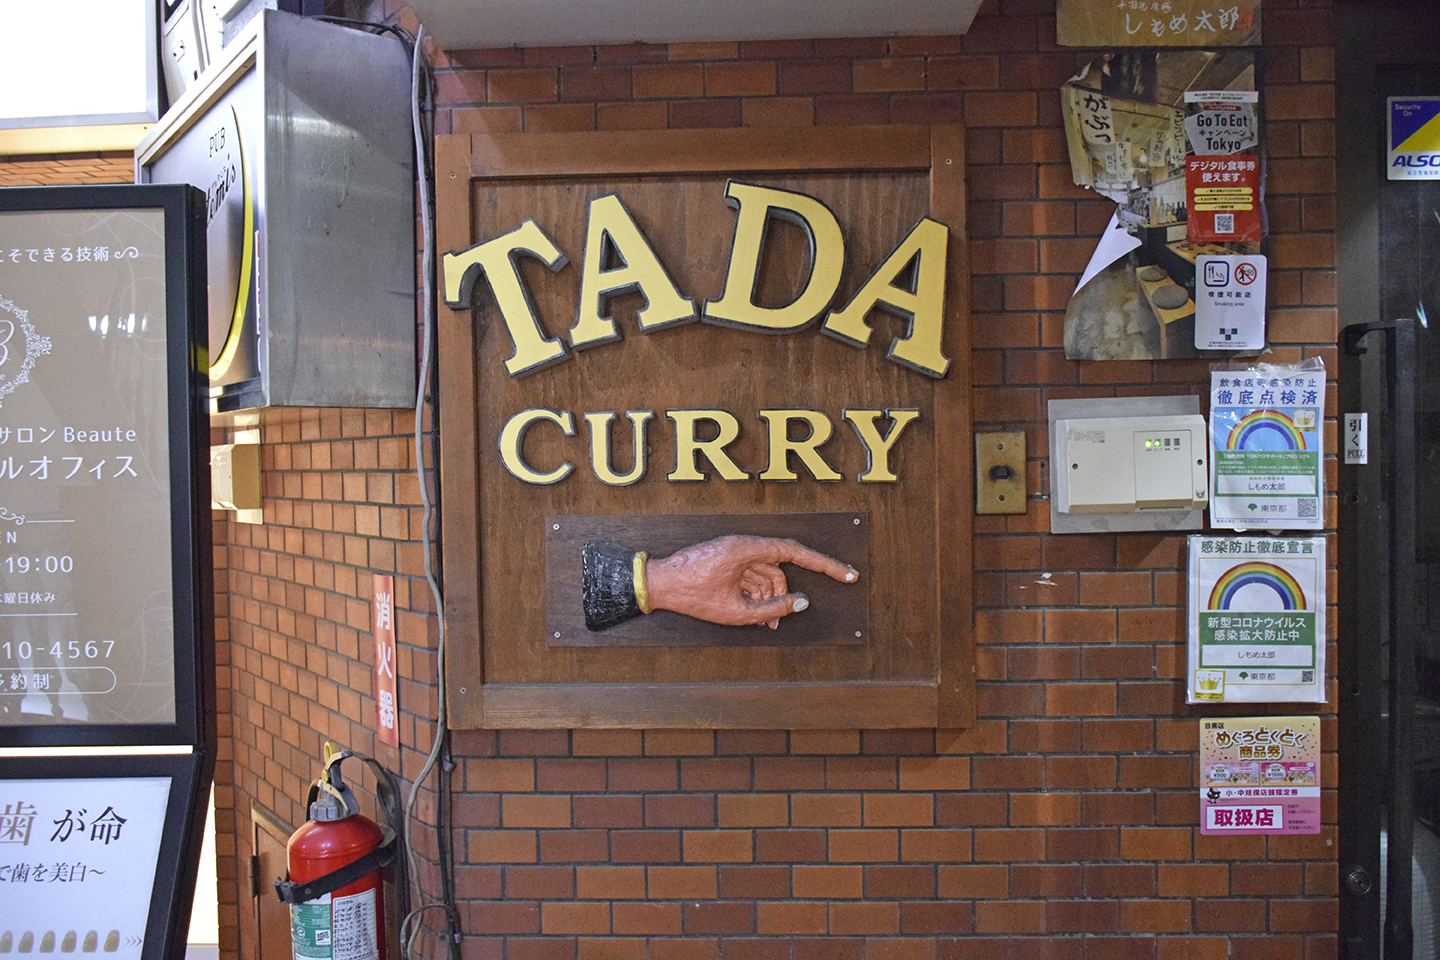 ビル入り口にある『TADA CURRY』の看板。手が指し示す先にお店のドアがある。